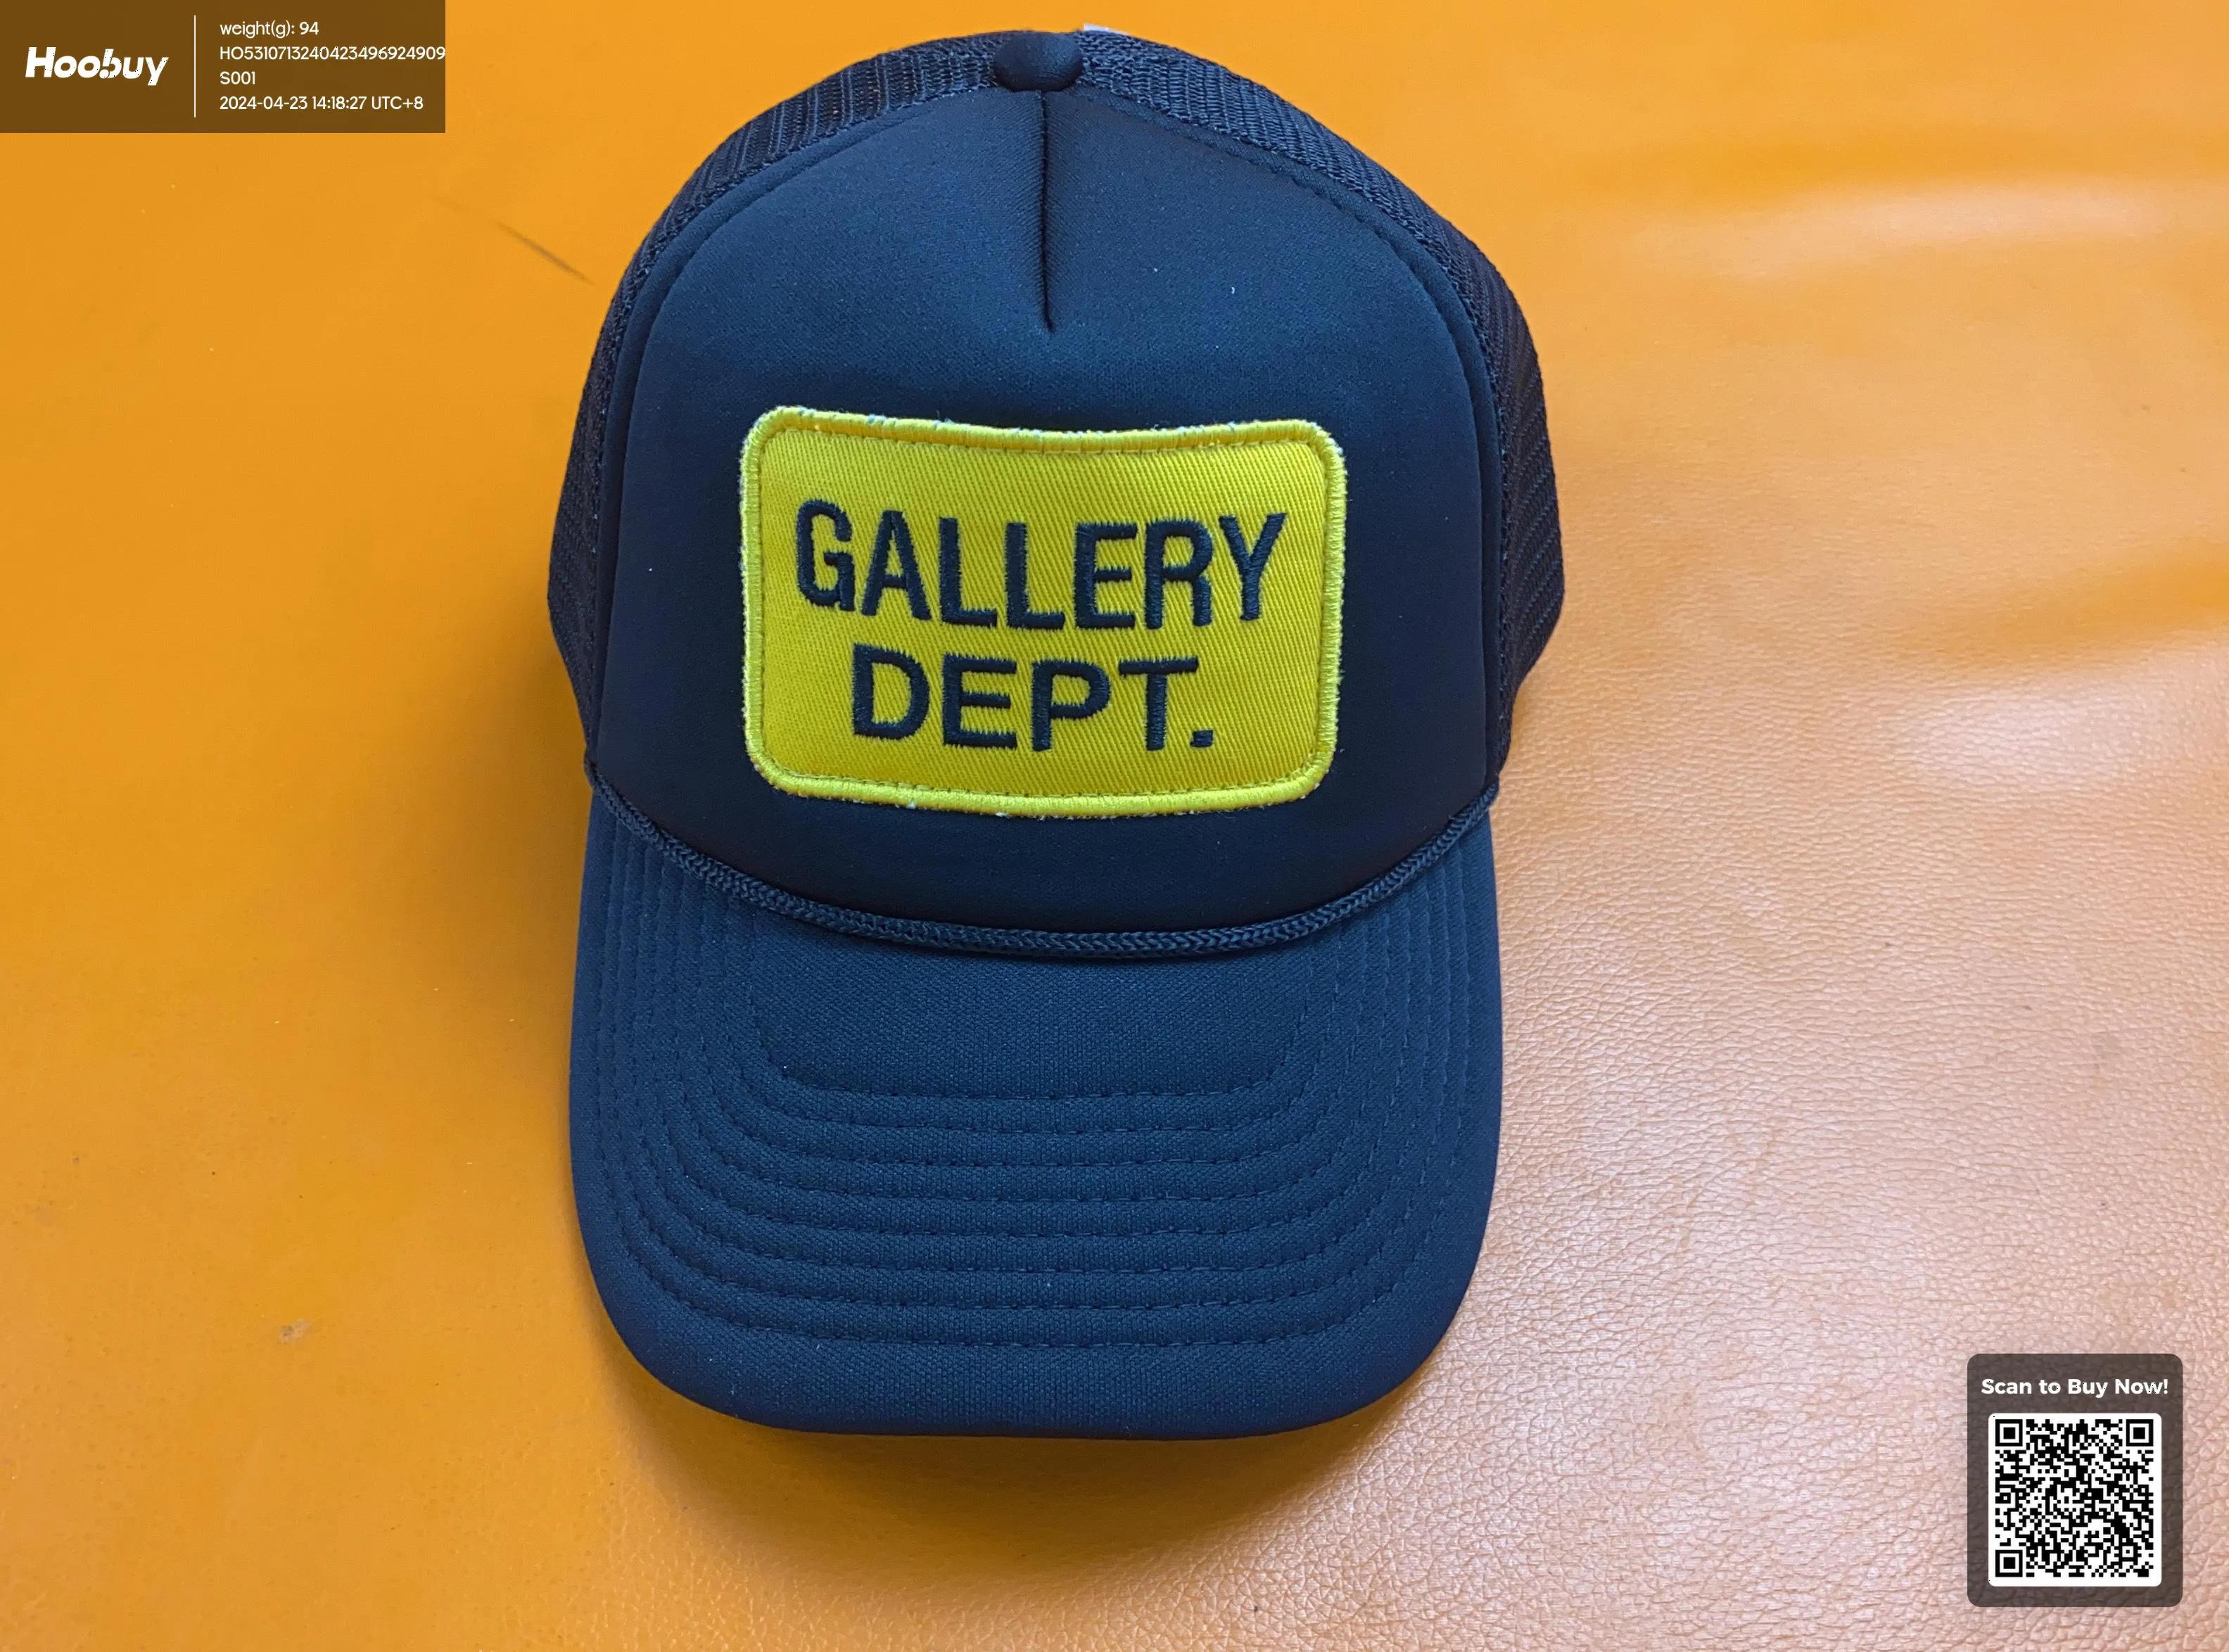 Gallery dept hats